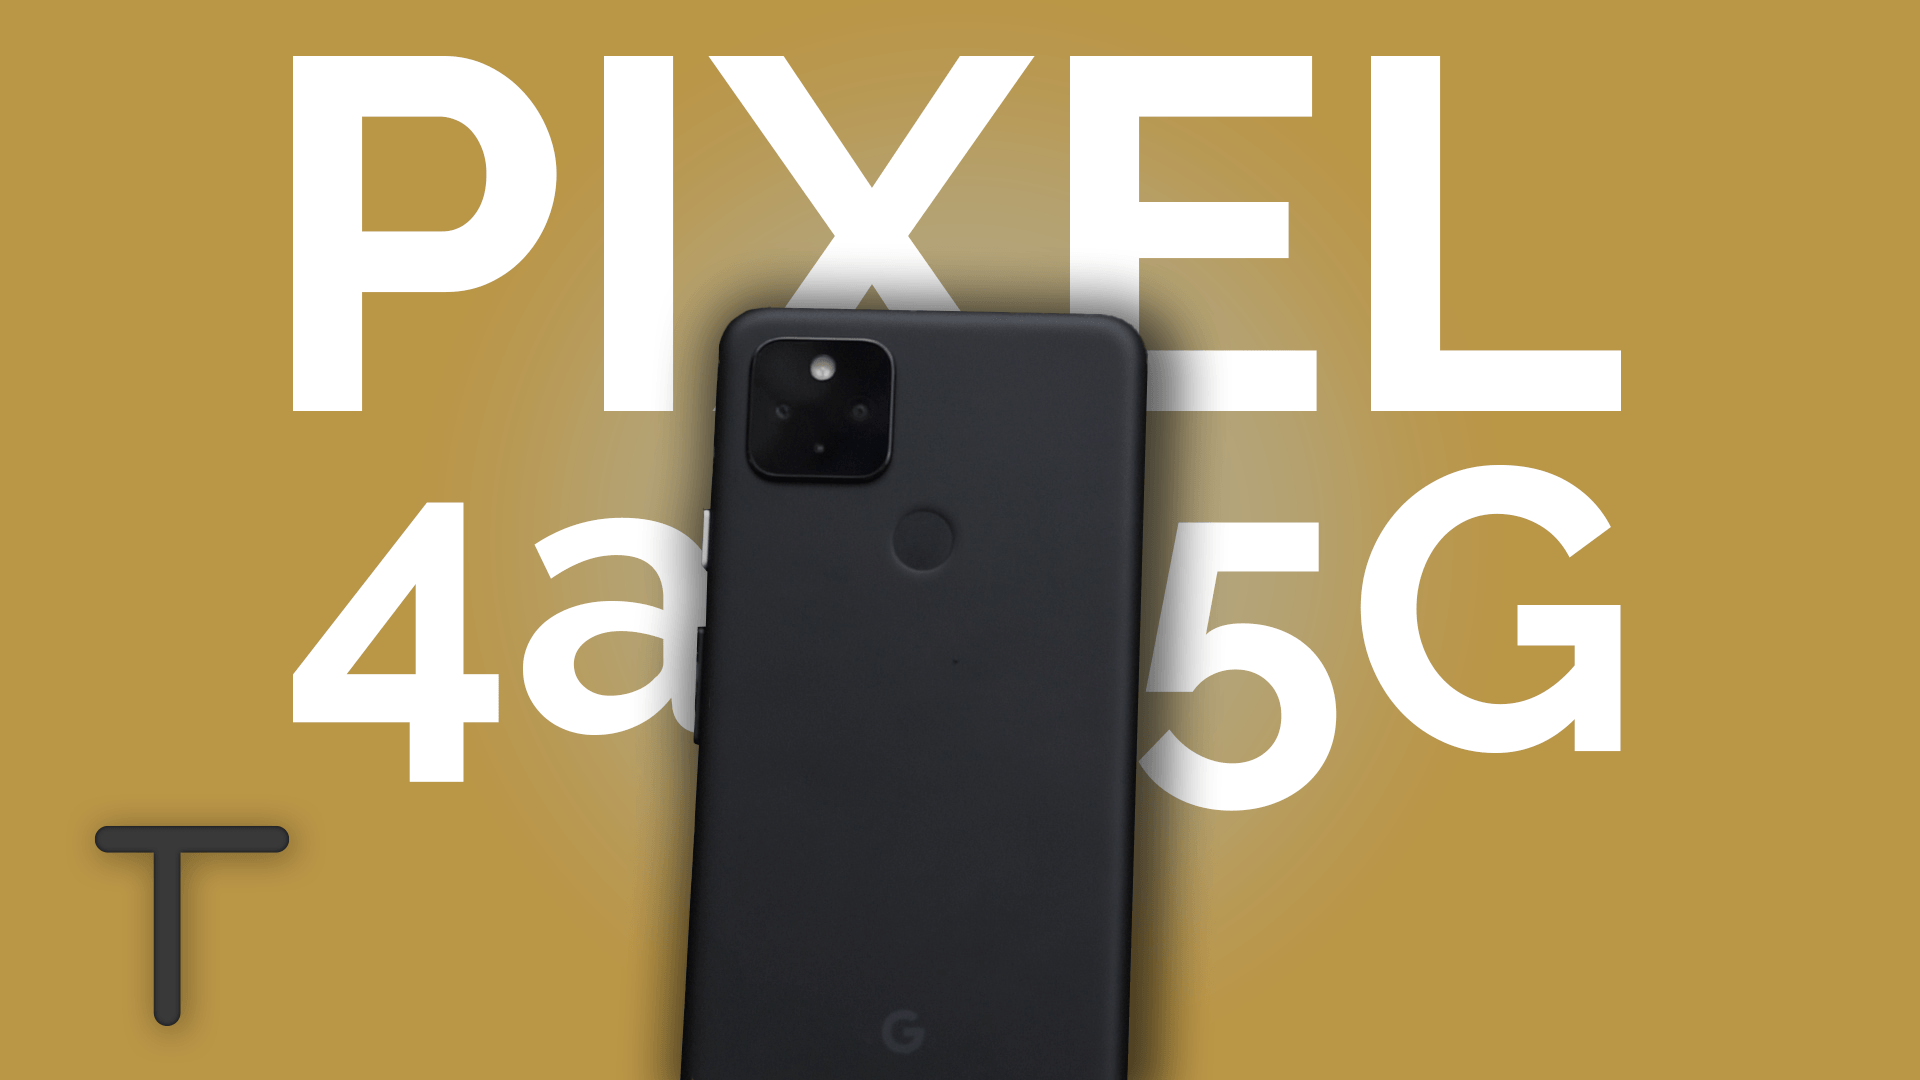 Das Beste Budget Smartphone? Pixel 4a 5G